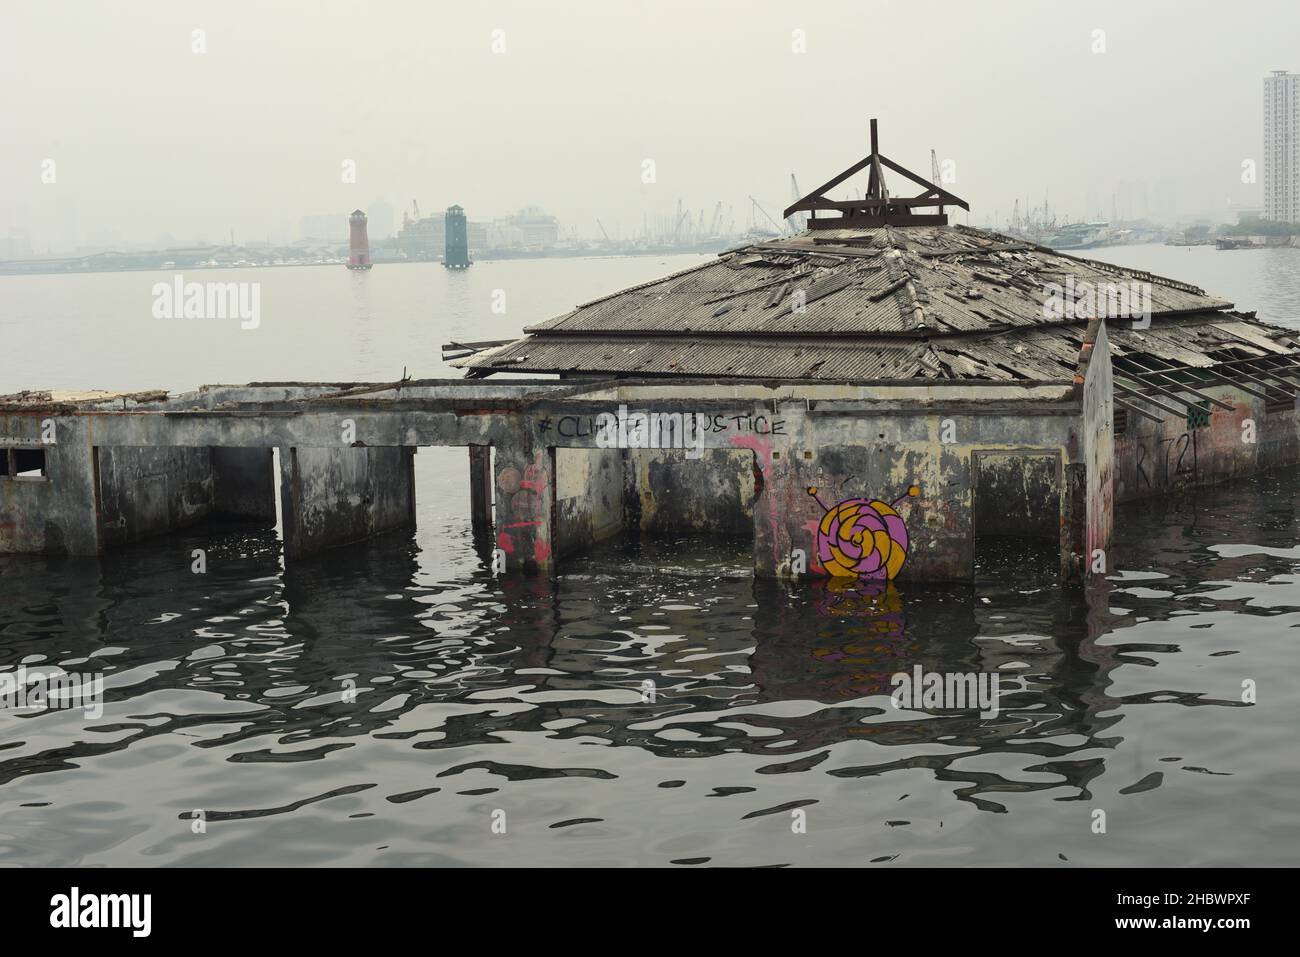 Un bâtiment de mosquée qui a été abandonné pendant des décennies en raison de l'élévation du niveau de la mer, de l'abrasion côtière et de l'affaissement des terres sur la zone côtière de Jakarta, en Indonésie. Banque D'Images